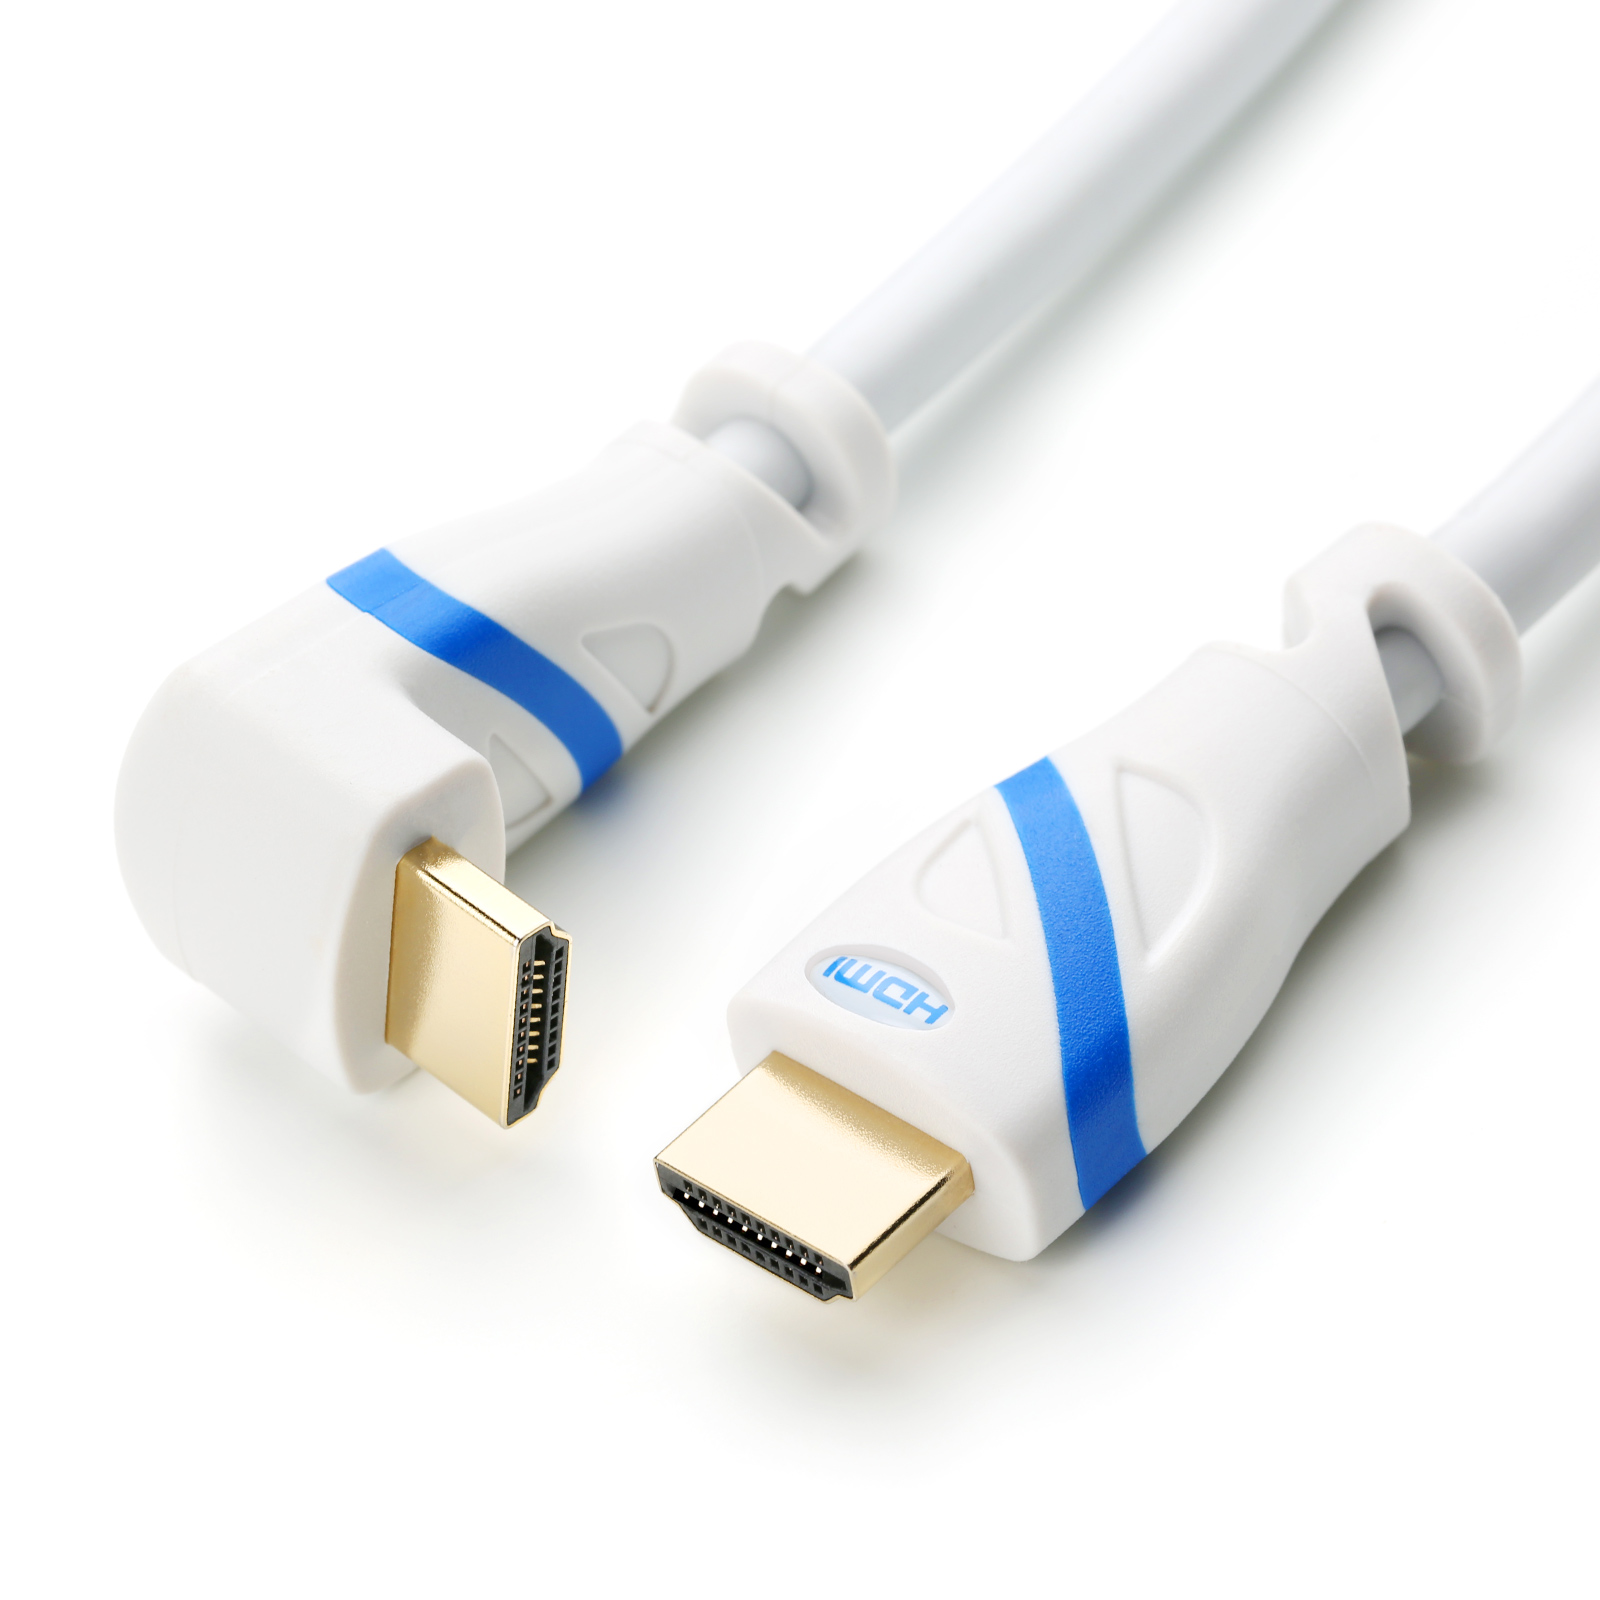 2.0 HDMI gewinkelt, weiß/blau 2m CSL HDMI Kabel, Kabel,